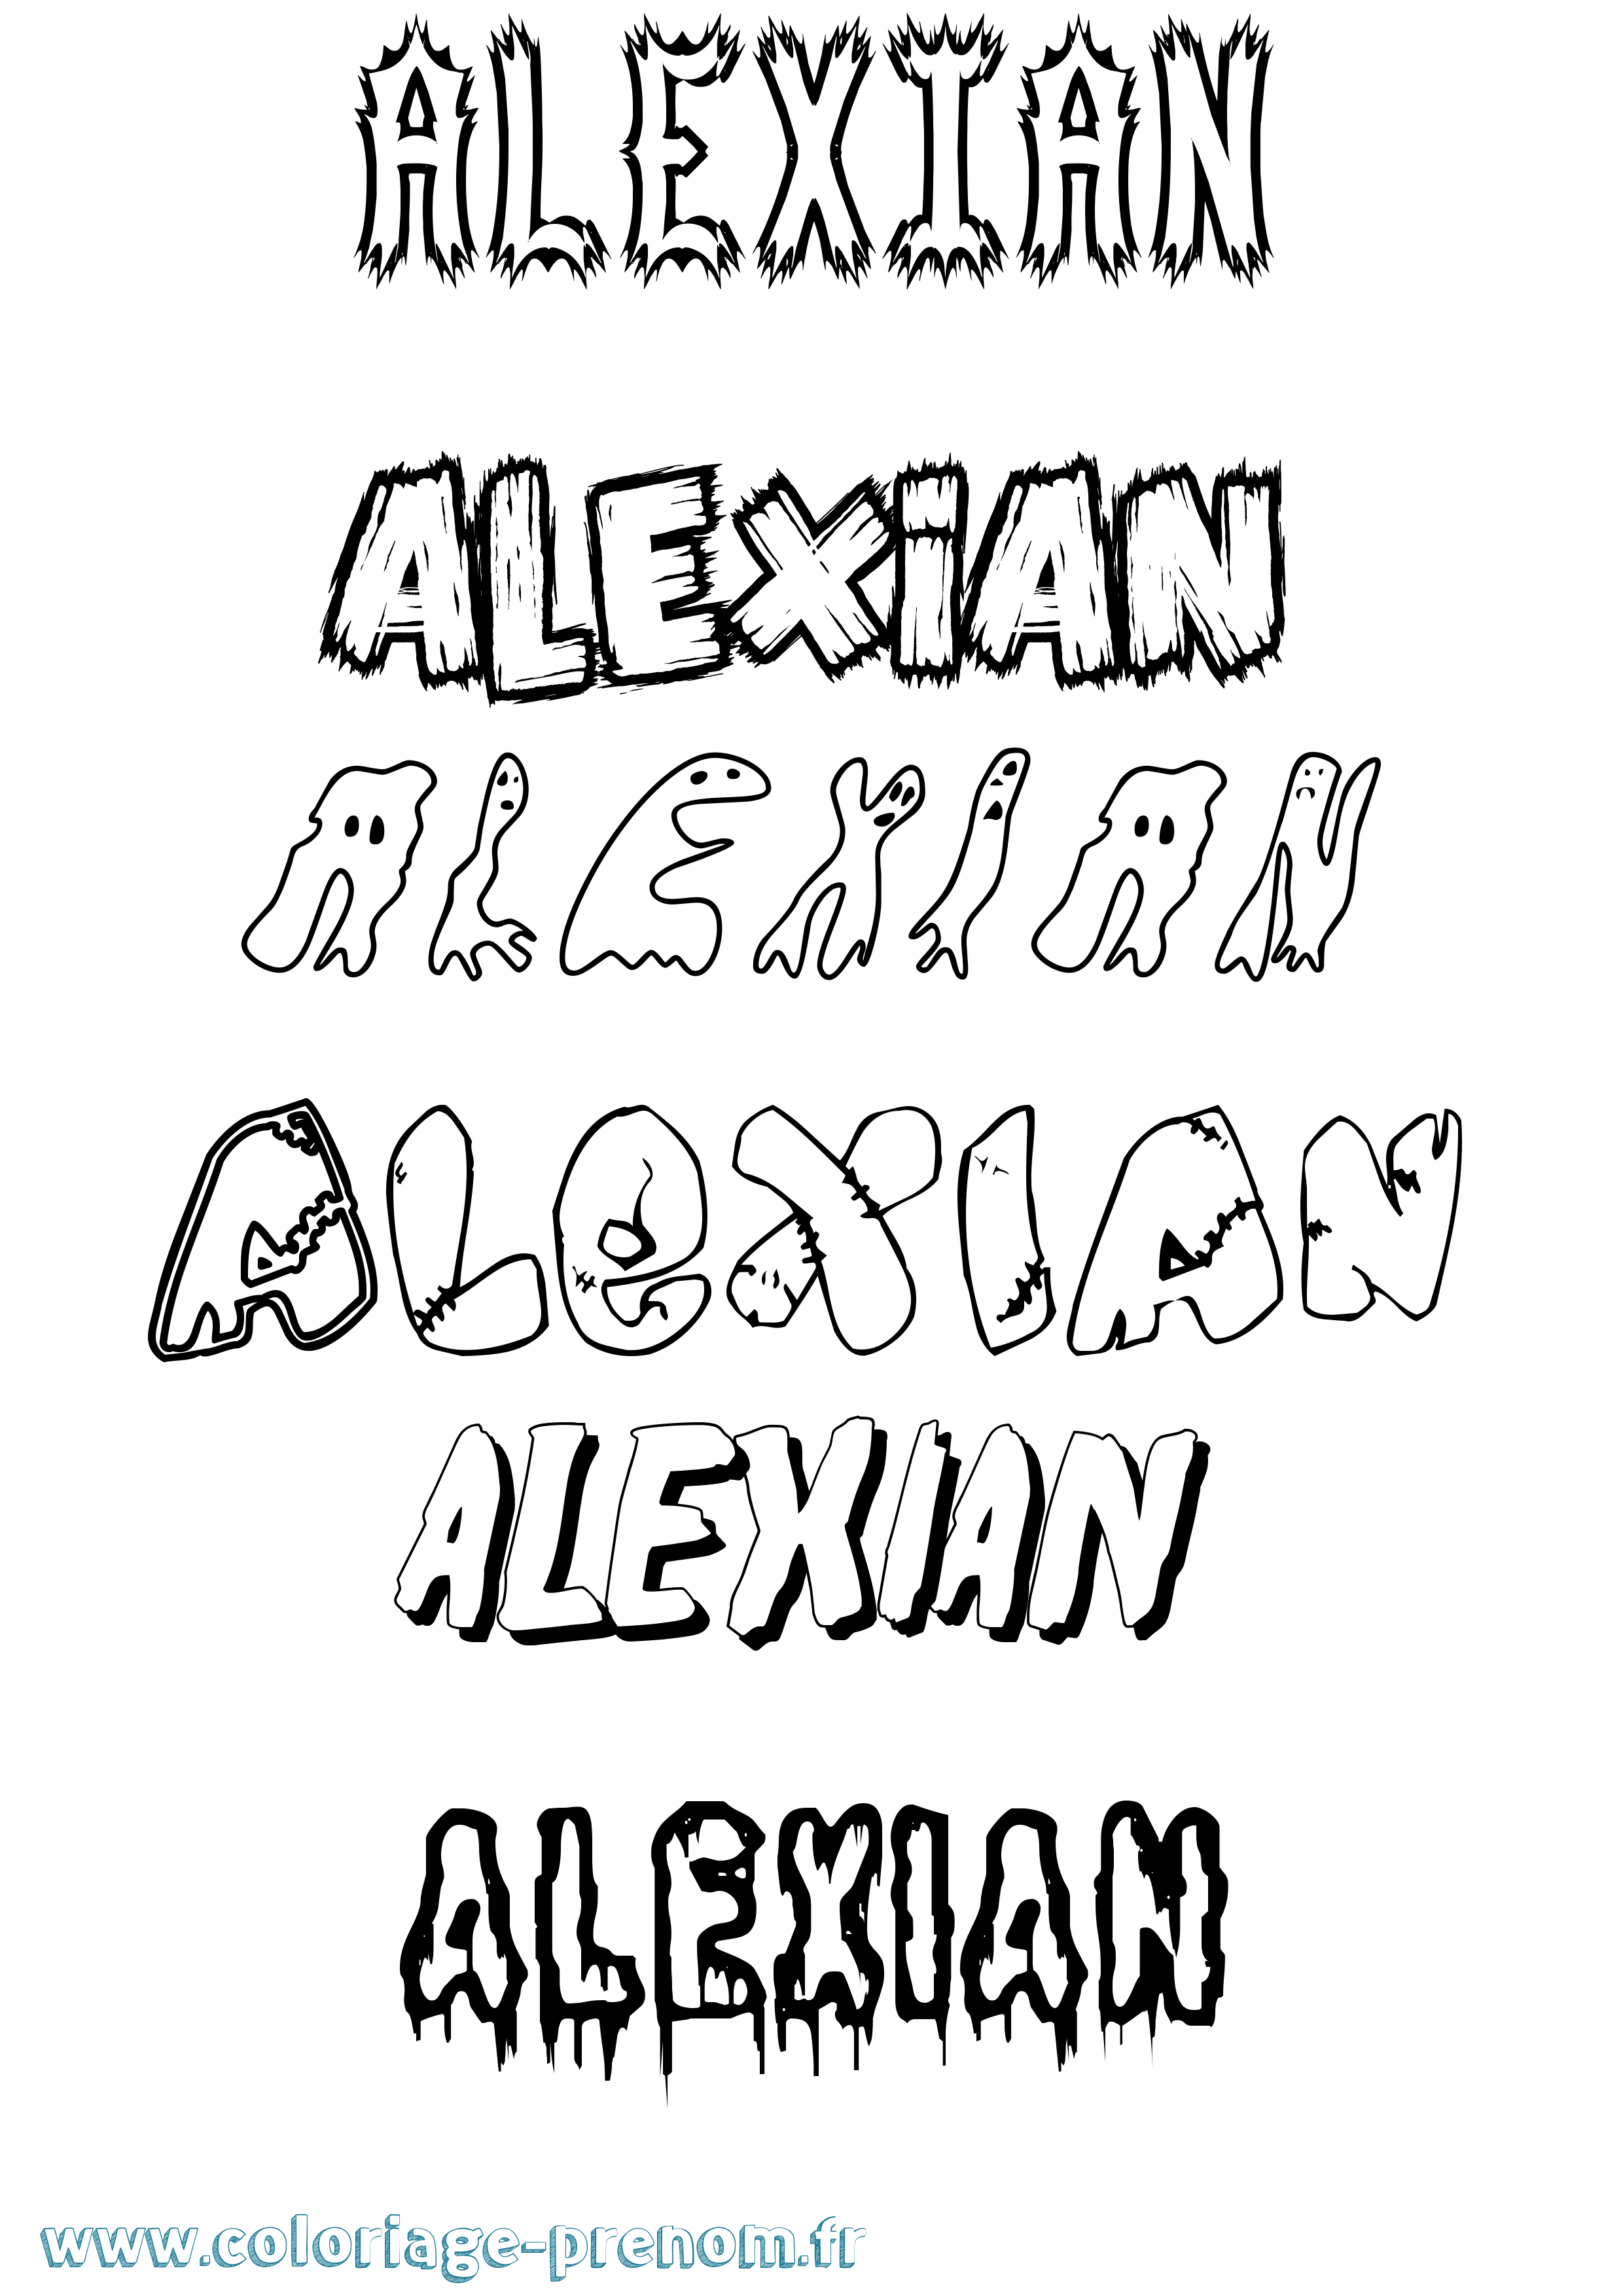 Coloriage prénom Alexian Frisson